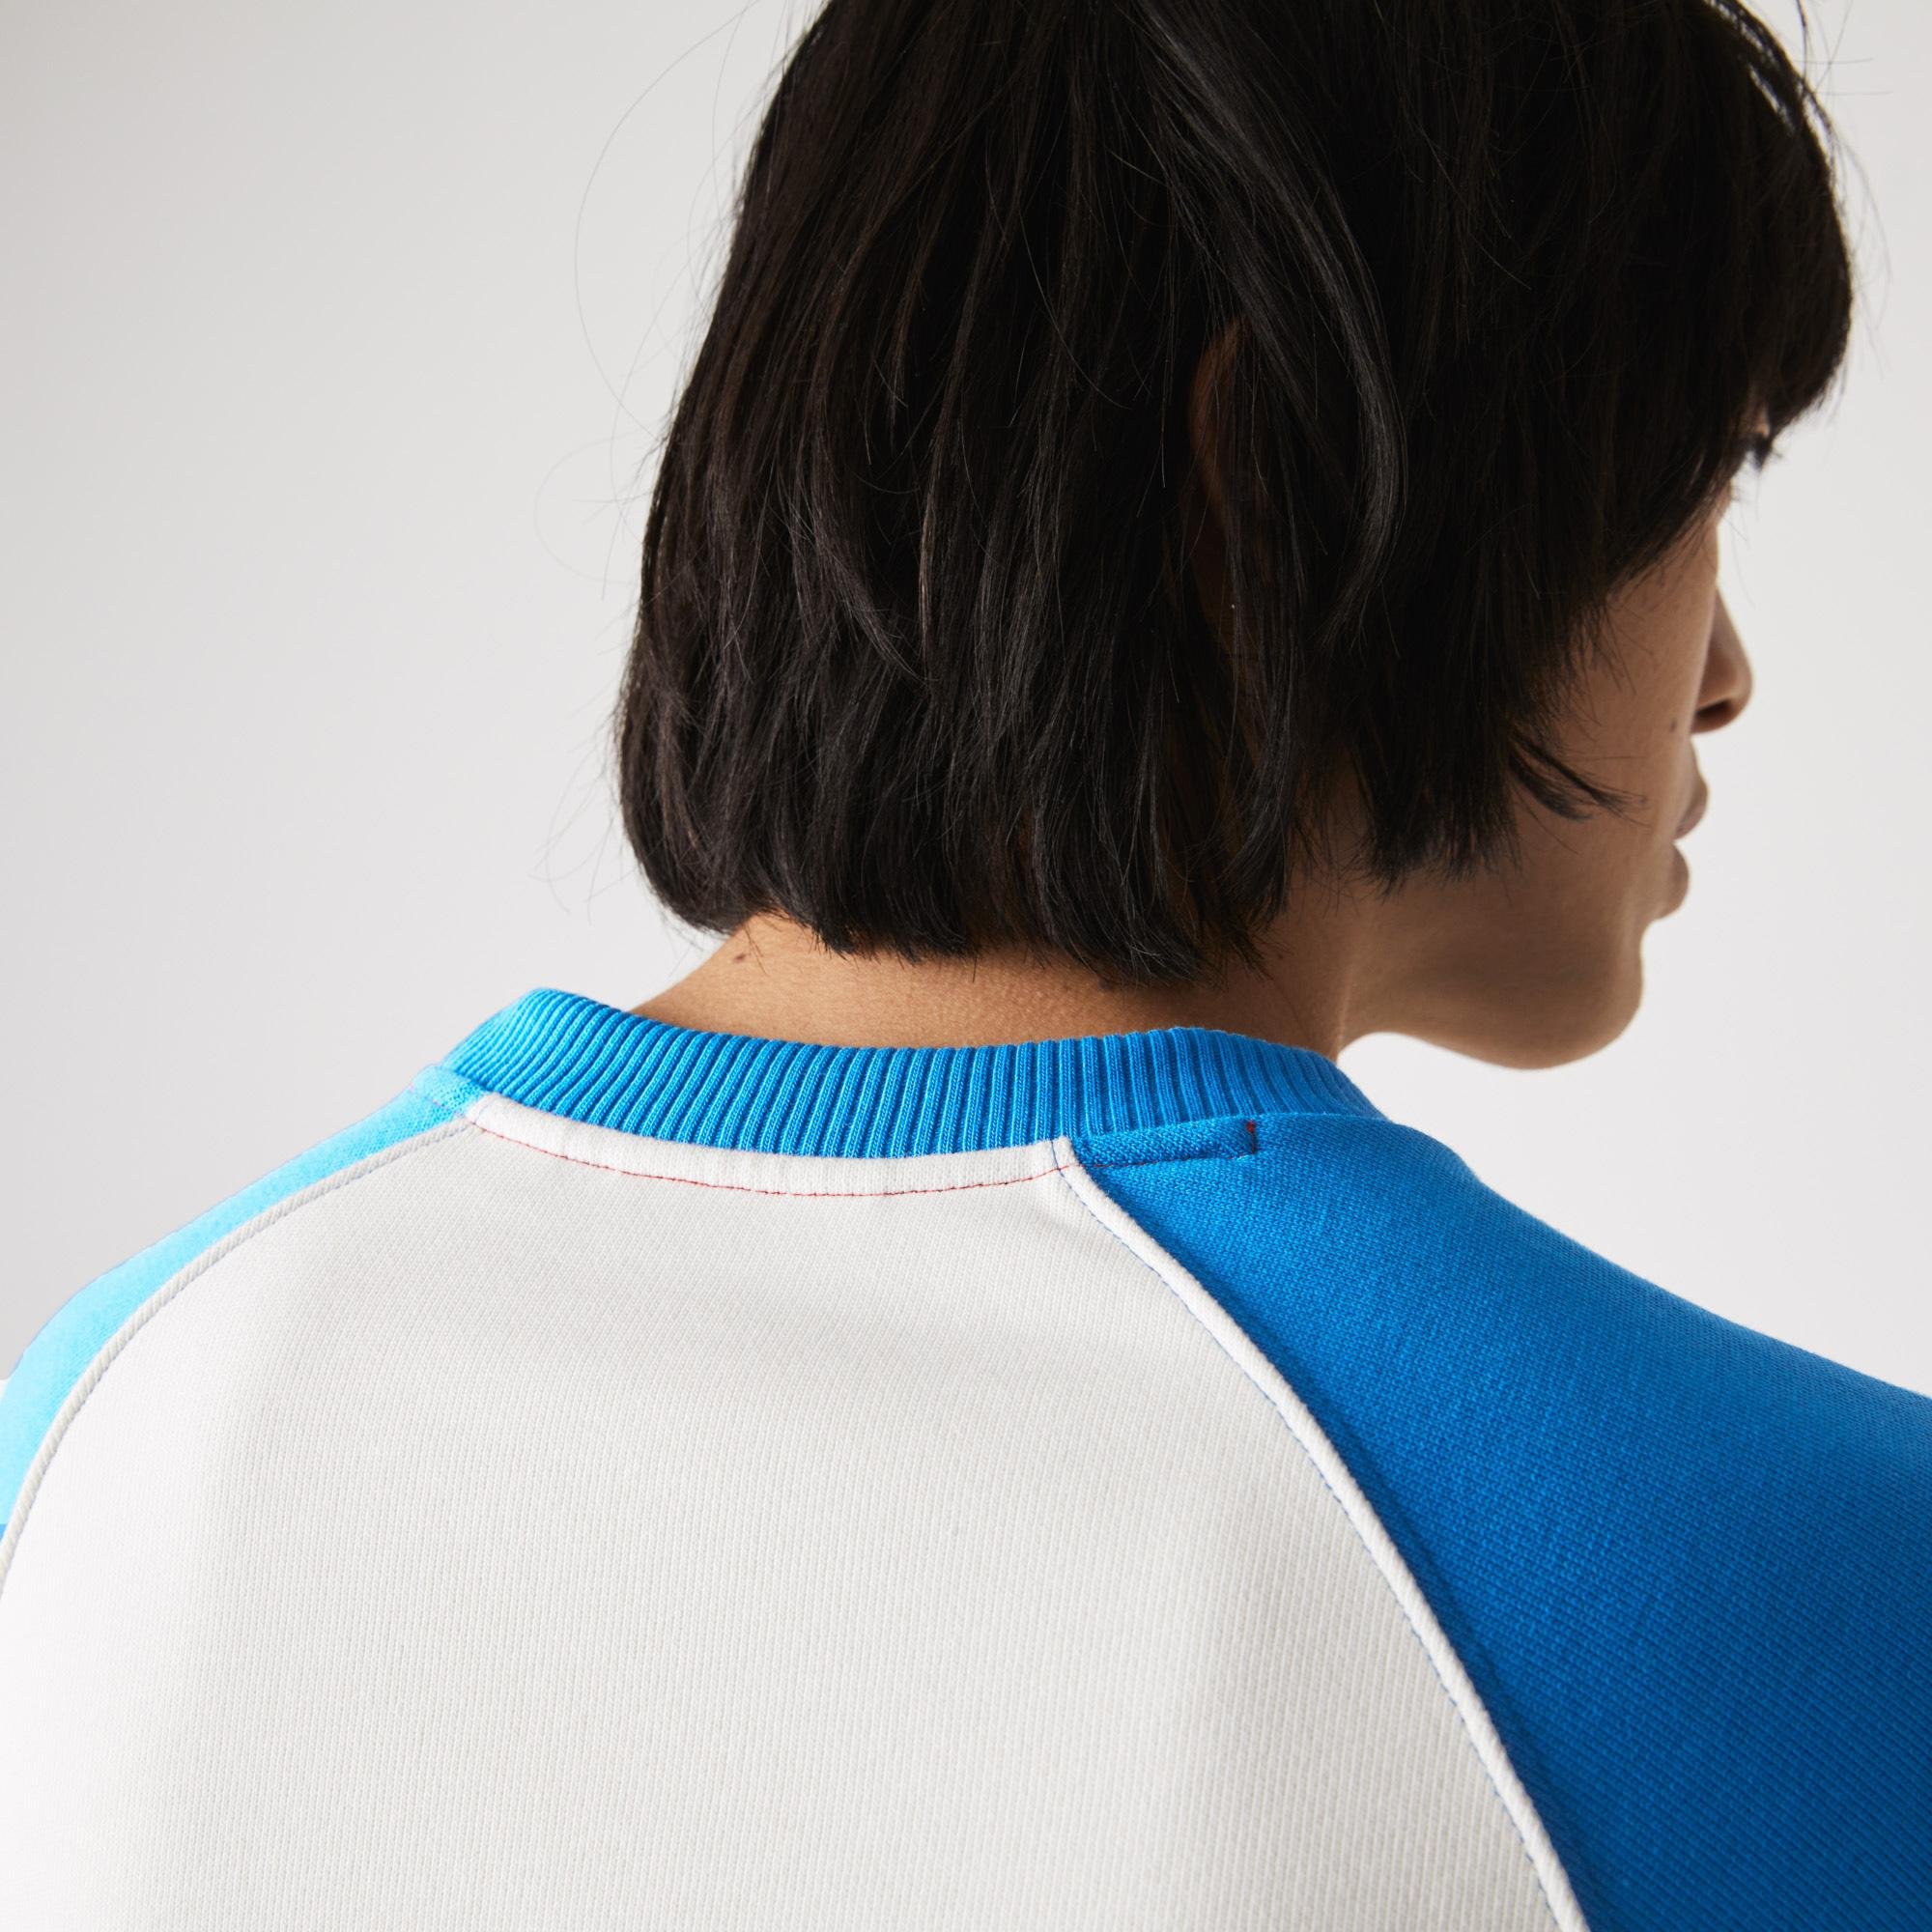 Lacoste Męska bluza polarowa, Loose Fit, z blokami kolorystycznymi, Made in France 